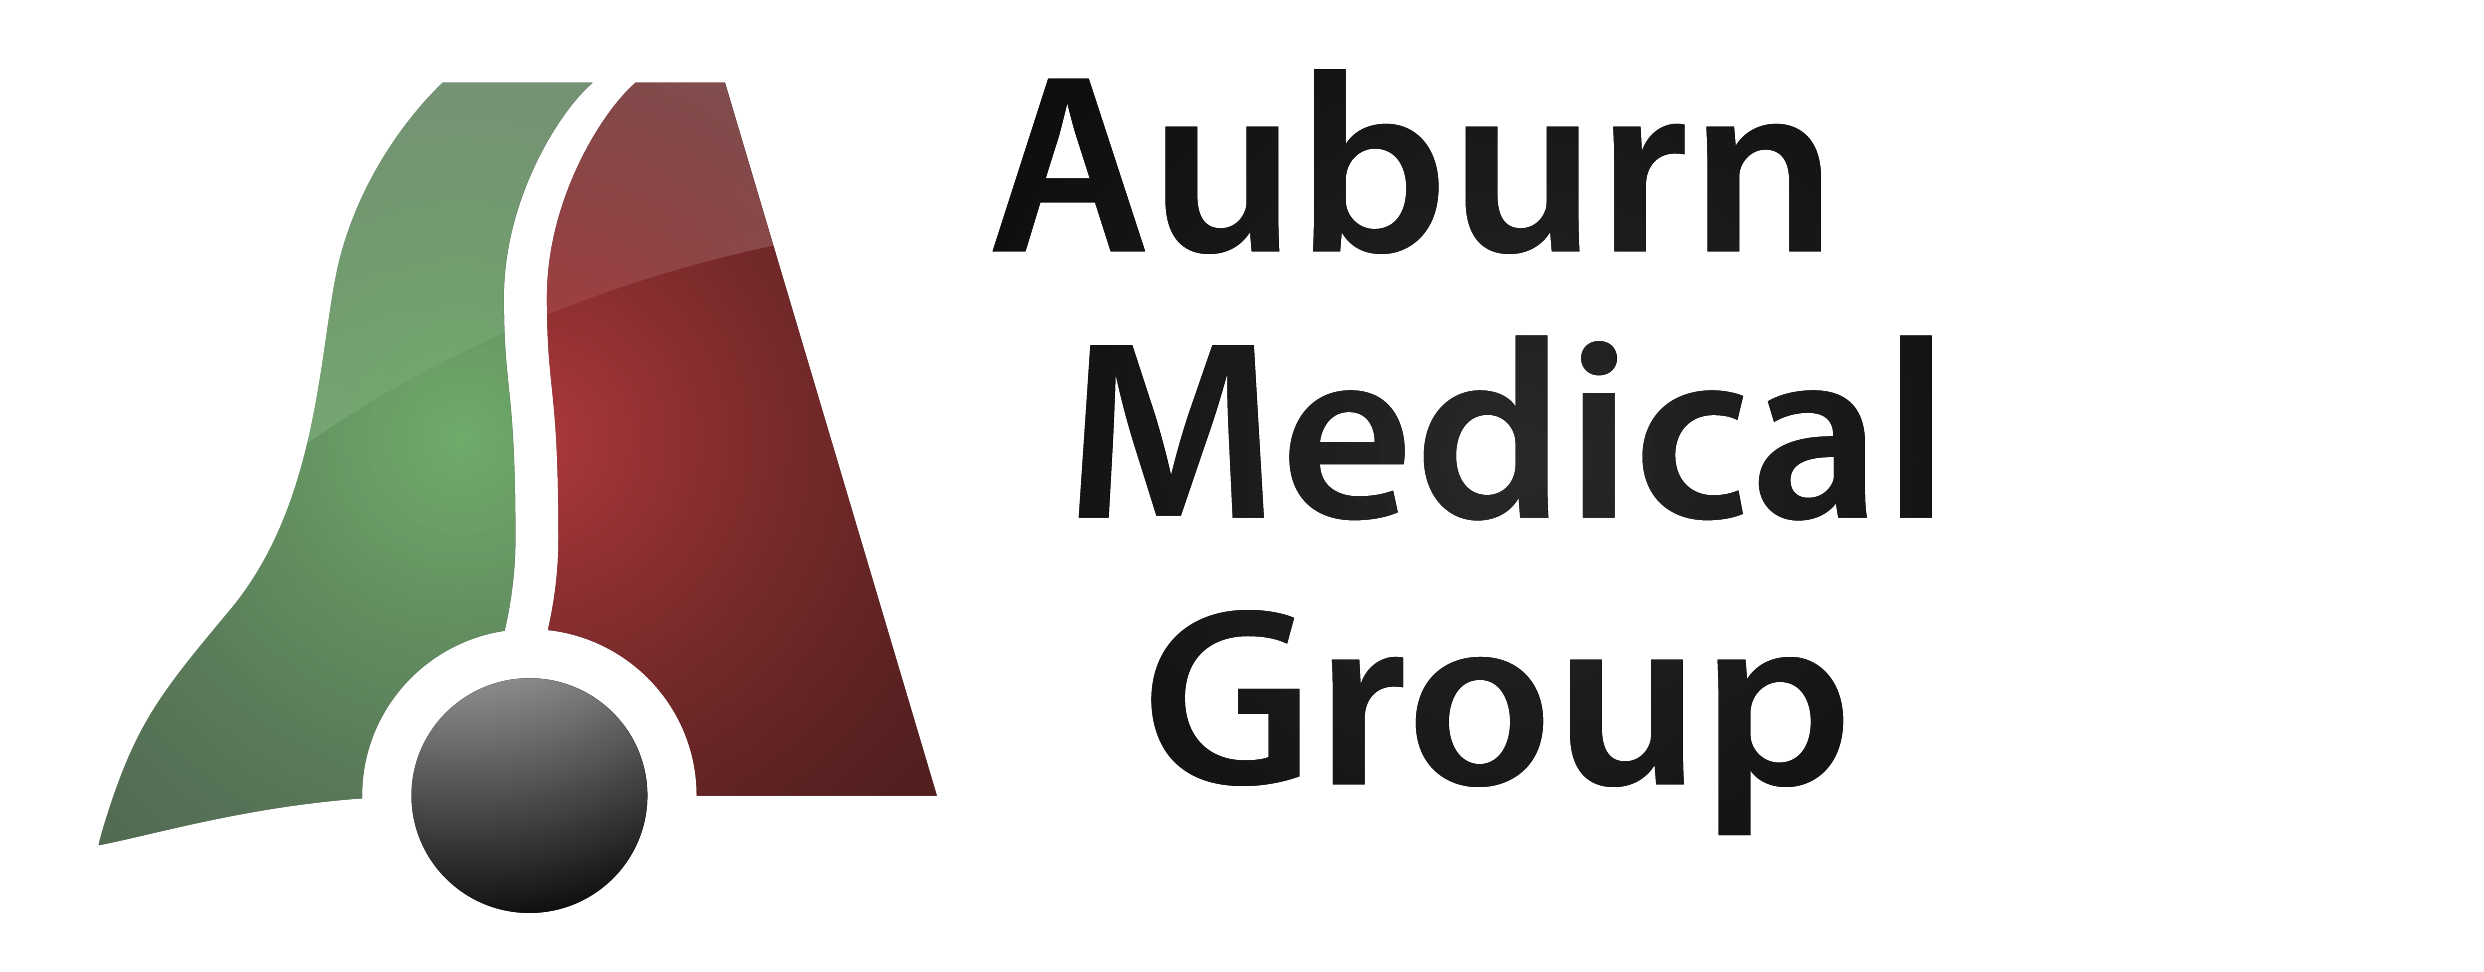 Auburn Medical Group